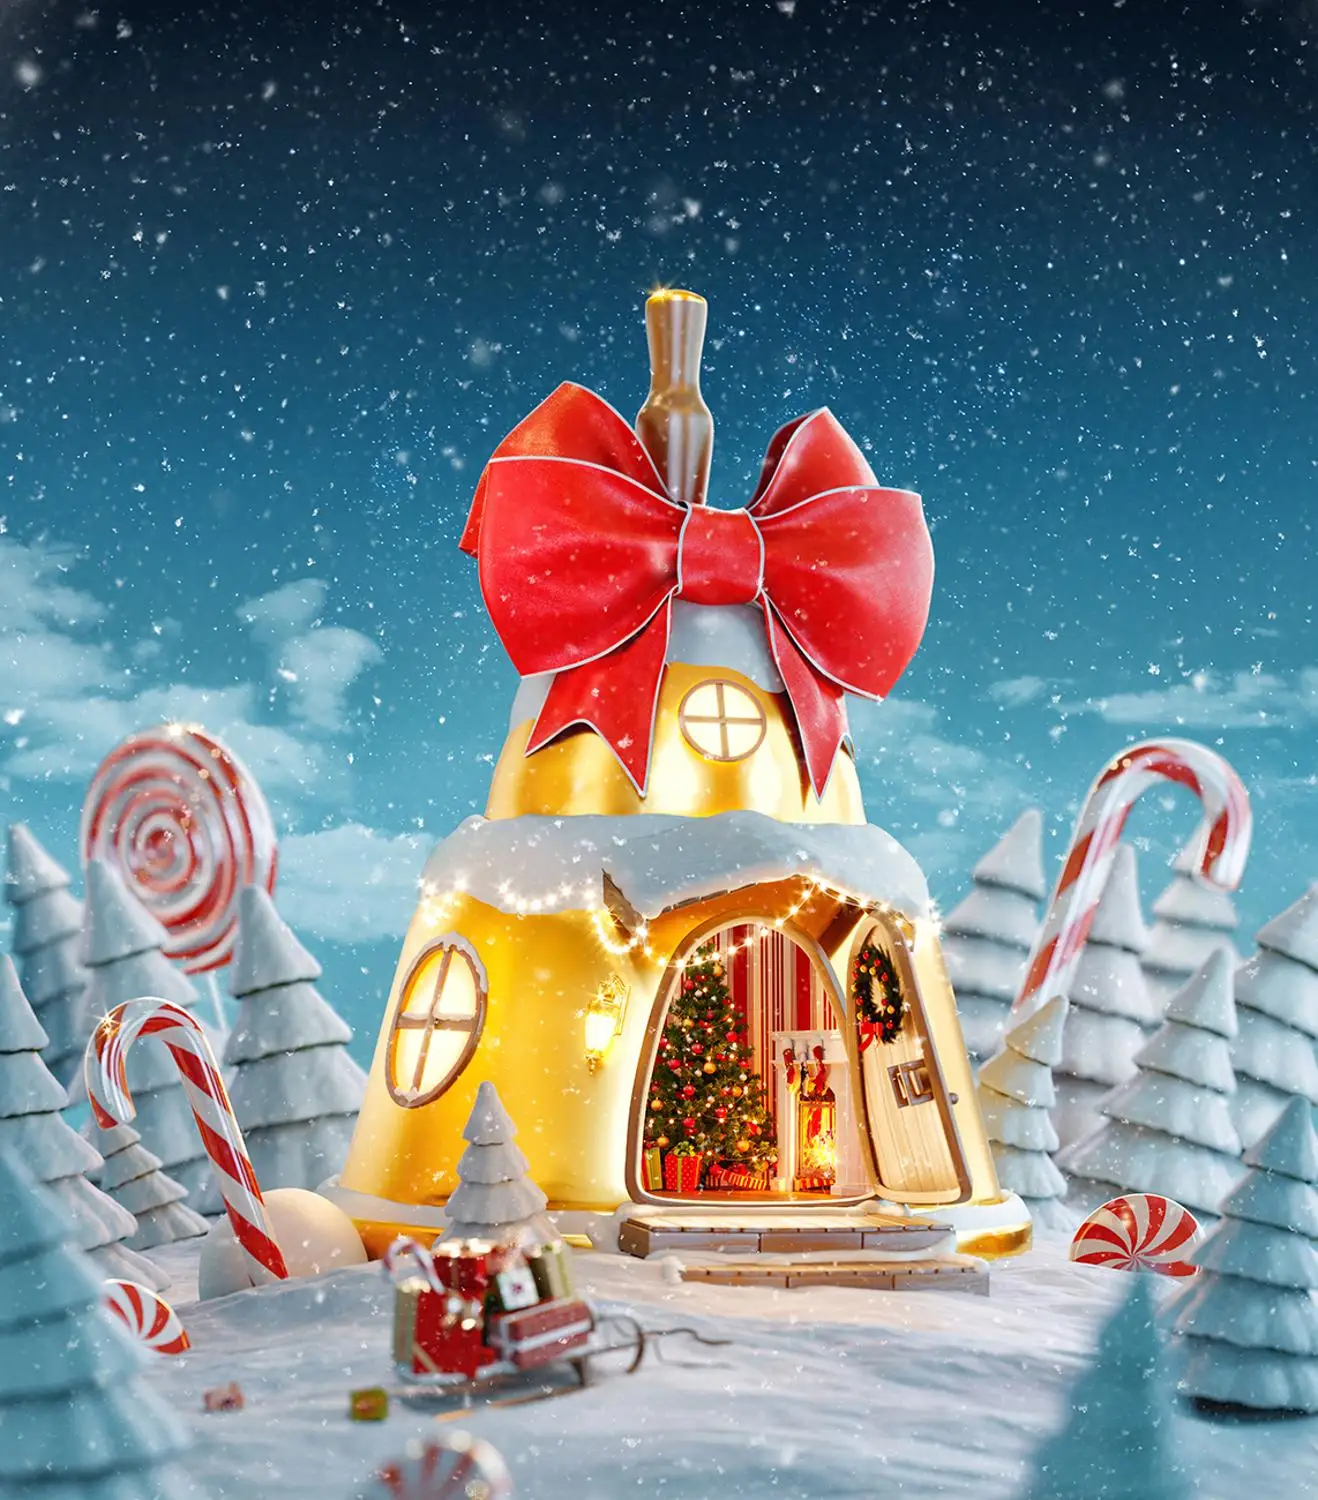 Фотофоны для фотостудии зимние снежные конфеты трость Рождественская елка дом Сказочный фон для фотосъемки